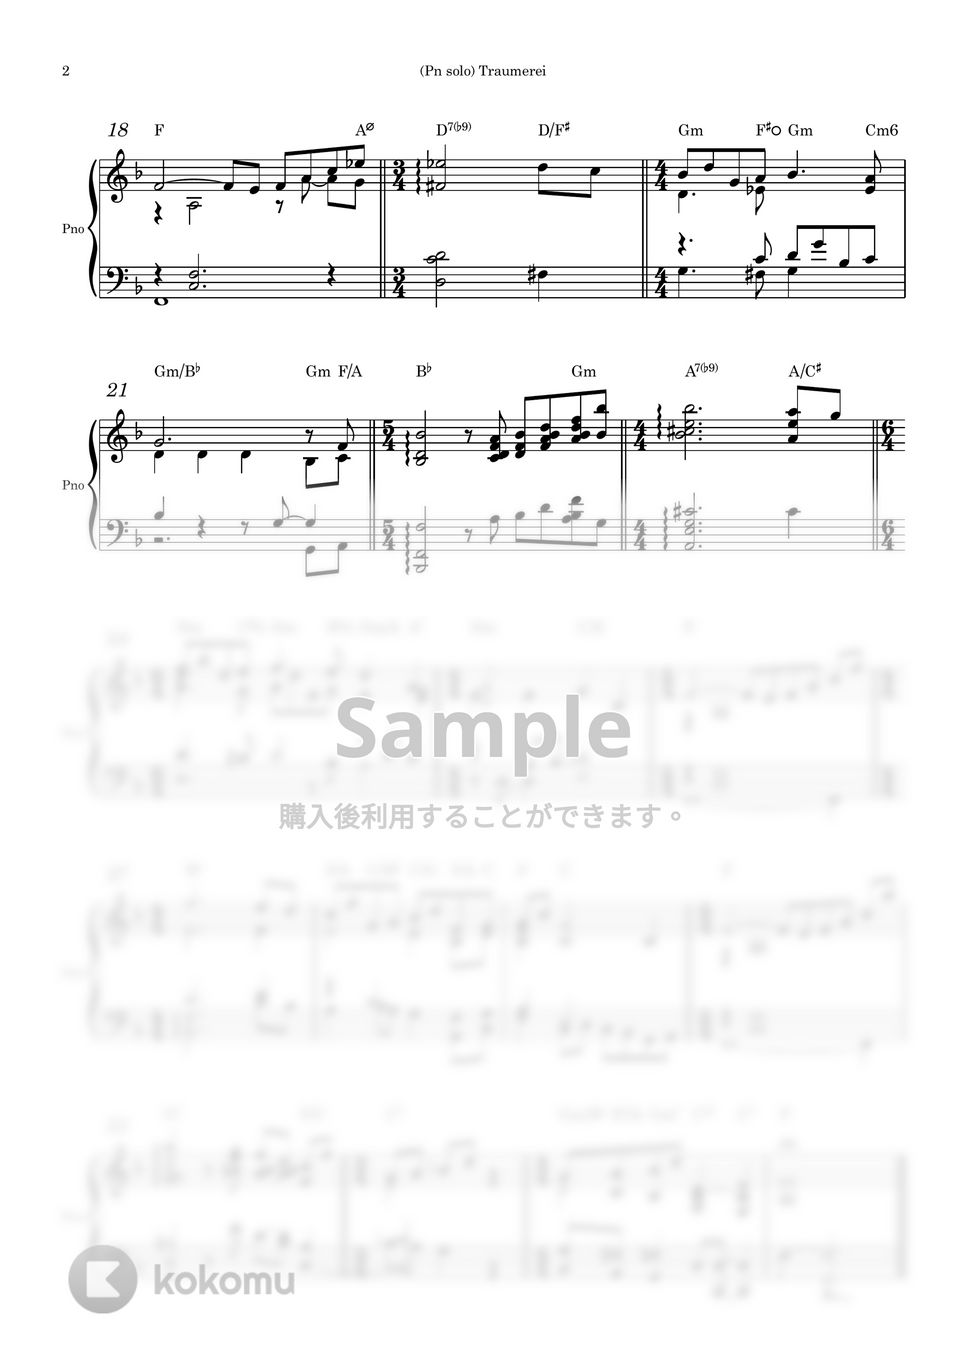 シューマン - トロメライ (ピアノソロ用楽譜) by Piano QQQ